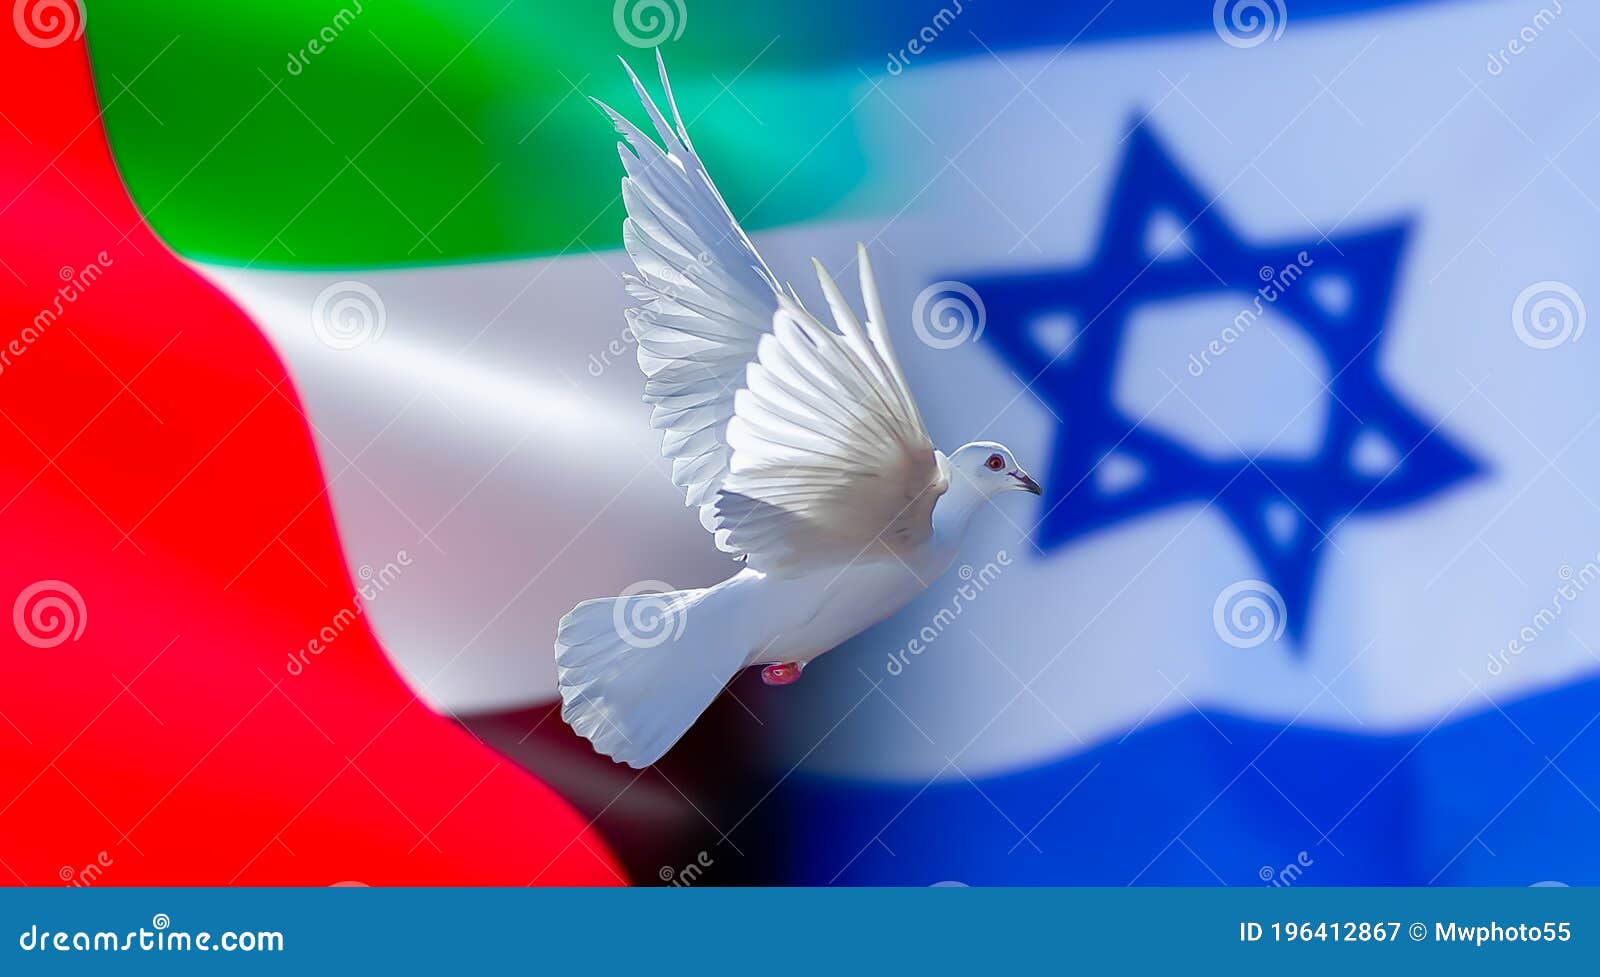 drapeau-d-israël-les-emirats-arabes-unis-l-eau-avec-la-colombe-de-paix-traité-196412867 Epiphanie dans Communauté spirituelle